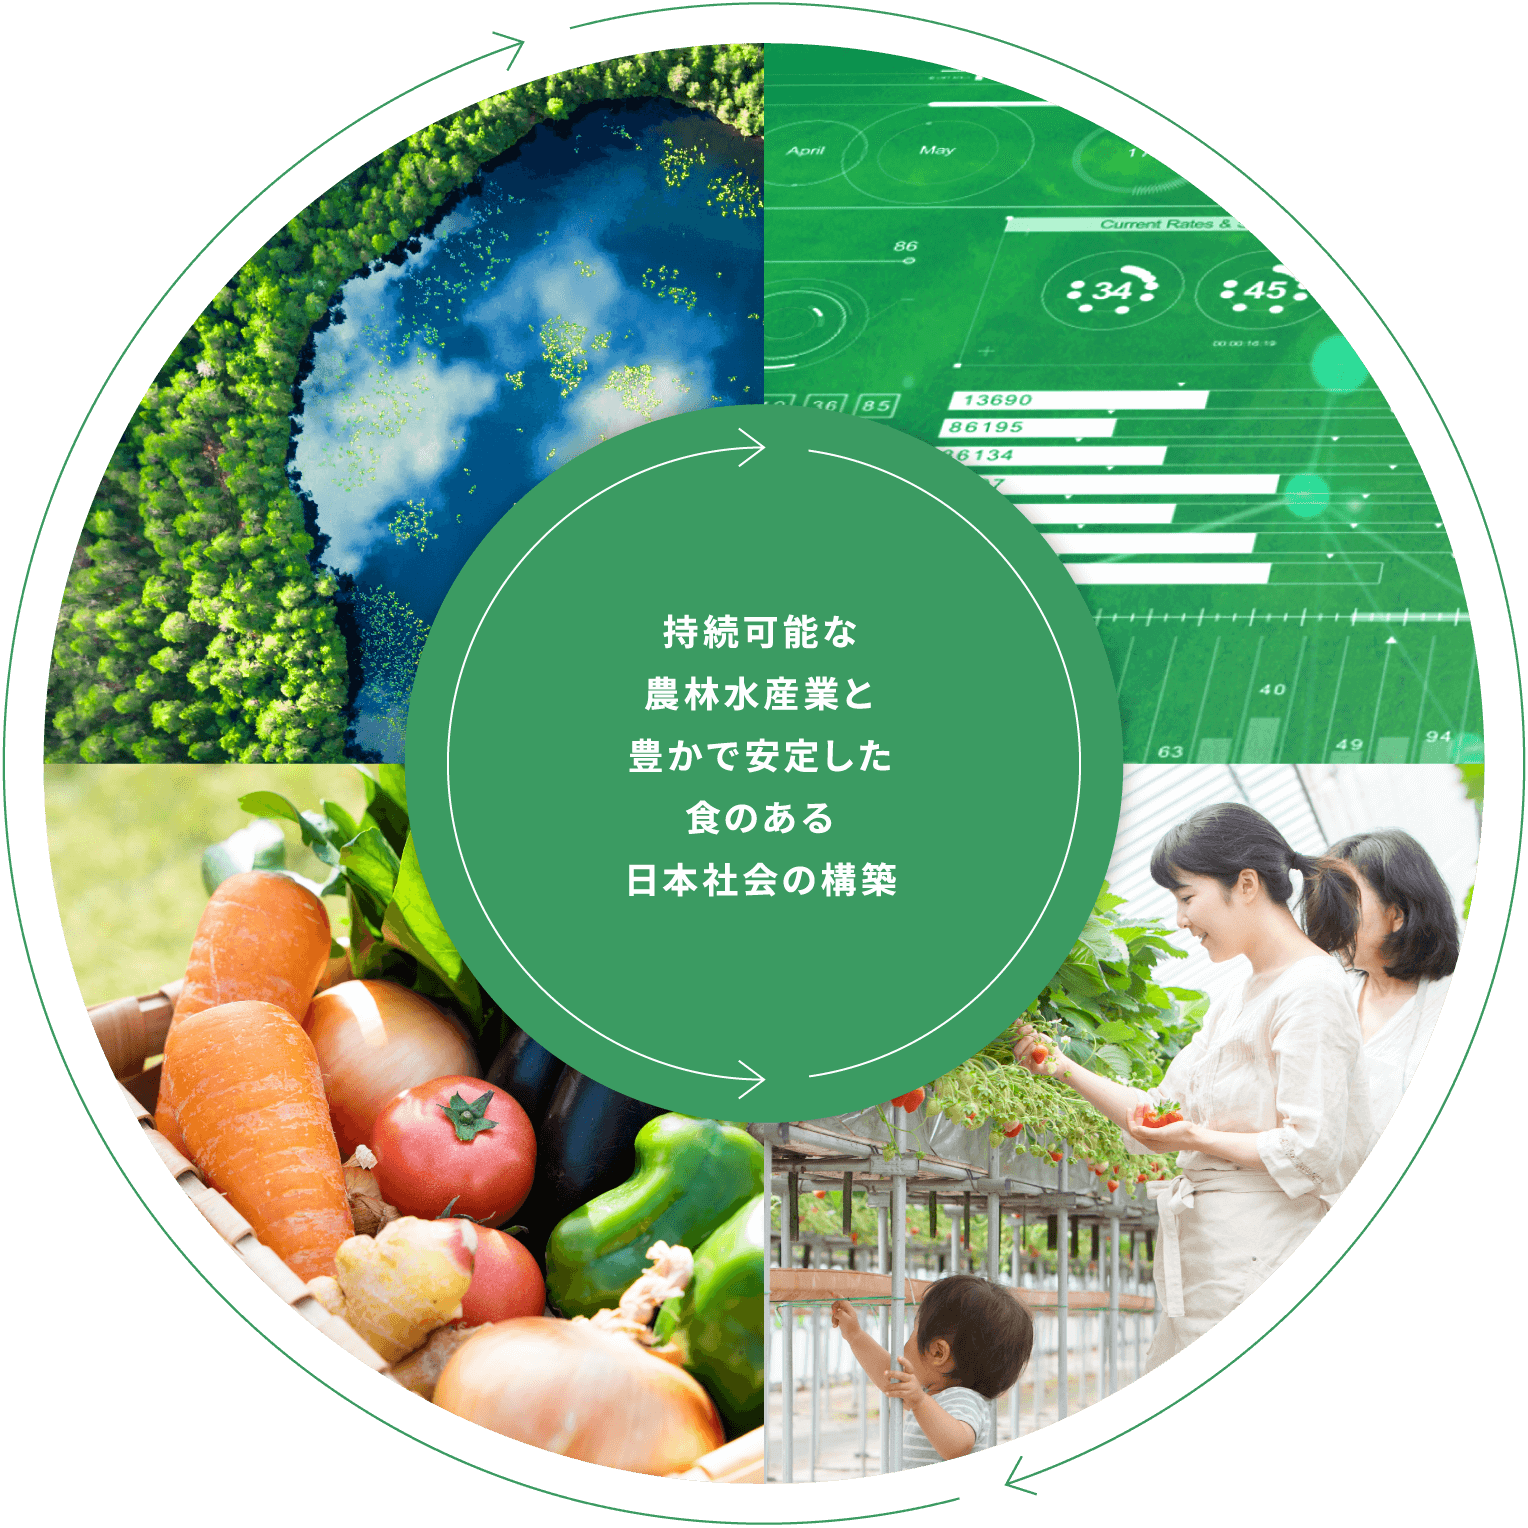 持続可能な農林水産業と豊かで安定した食のある日本社会の構築